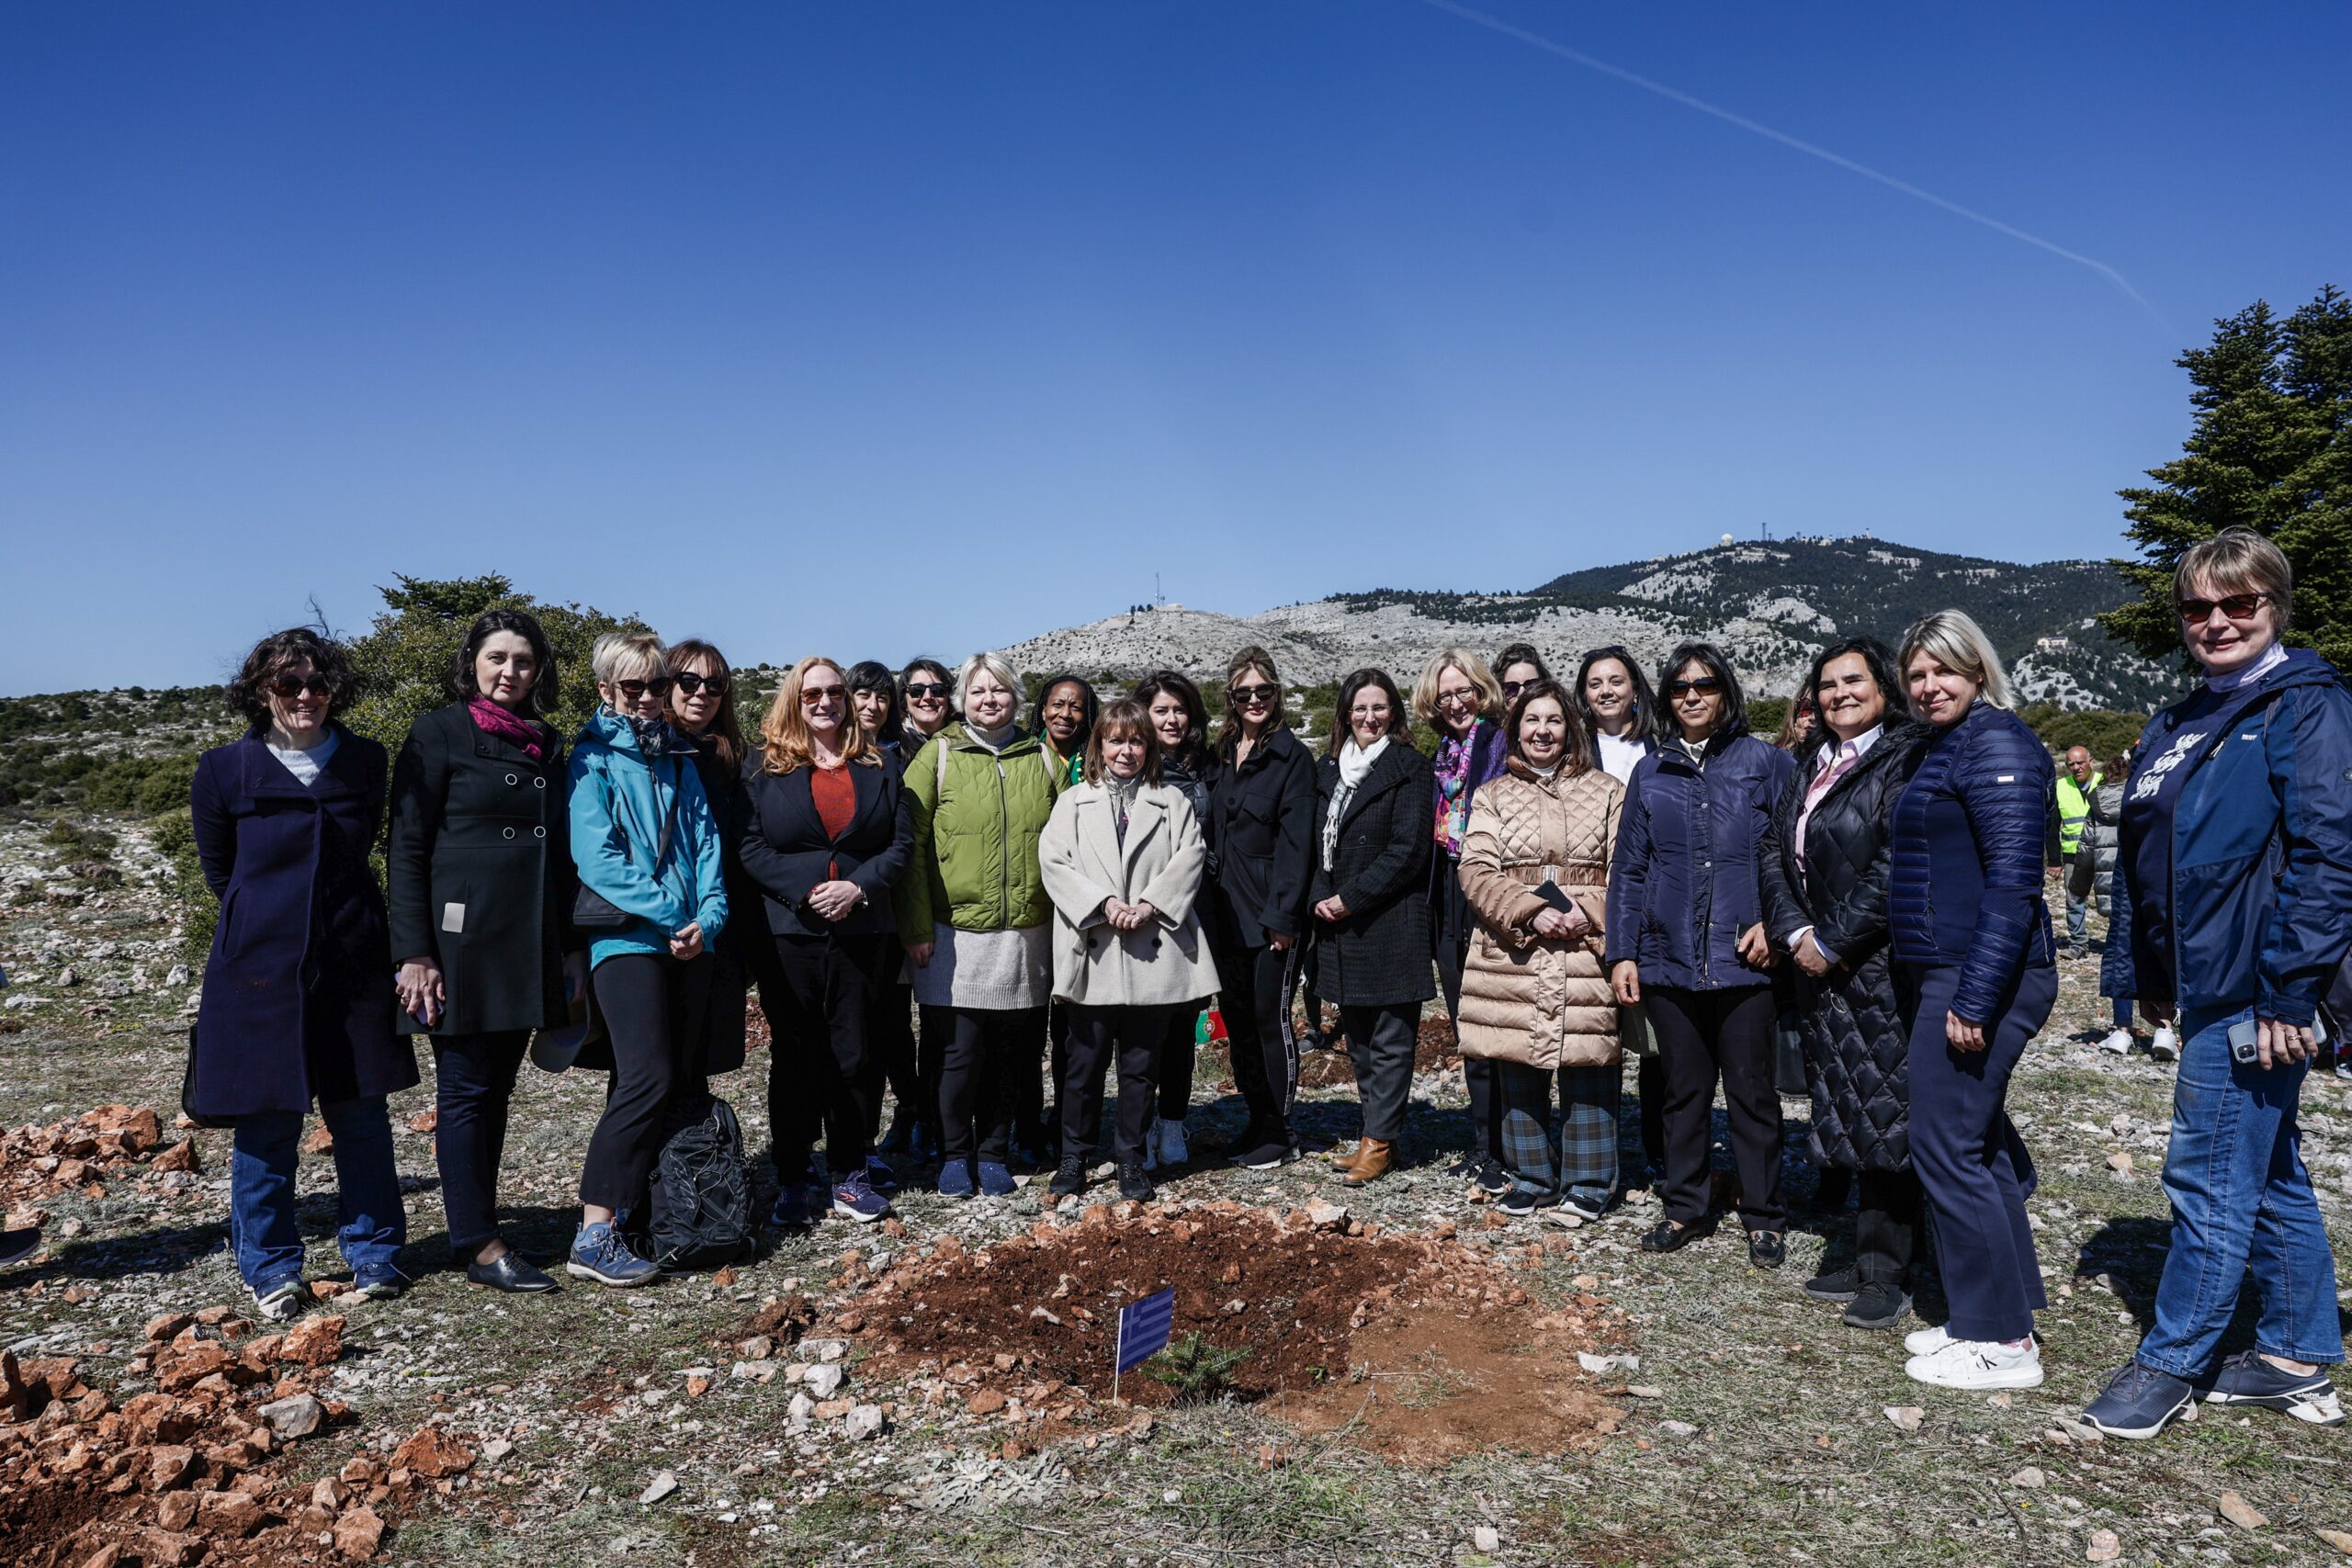 Πάρνηθα: Συμβολική δενδροφύτευση από την ΠτΔ με τη συνοδεία 20 γυναικών πρέσβεων στην Ελλάδα